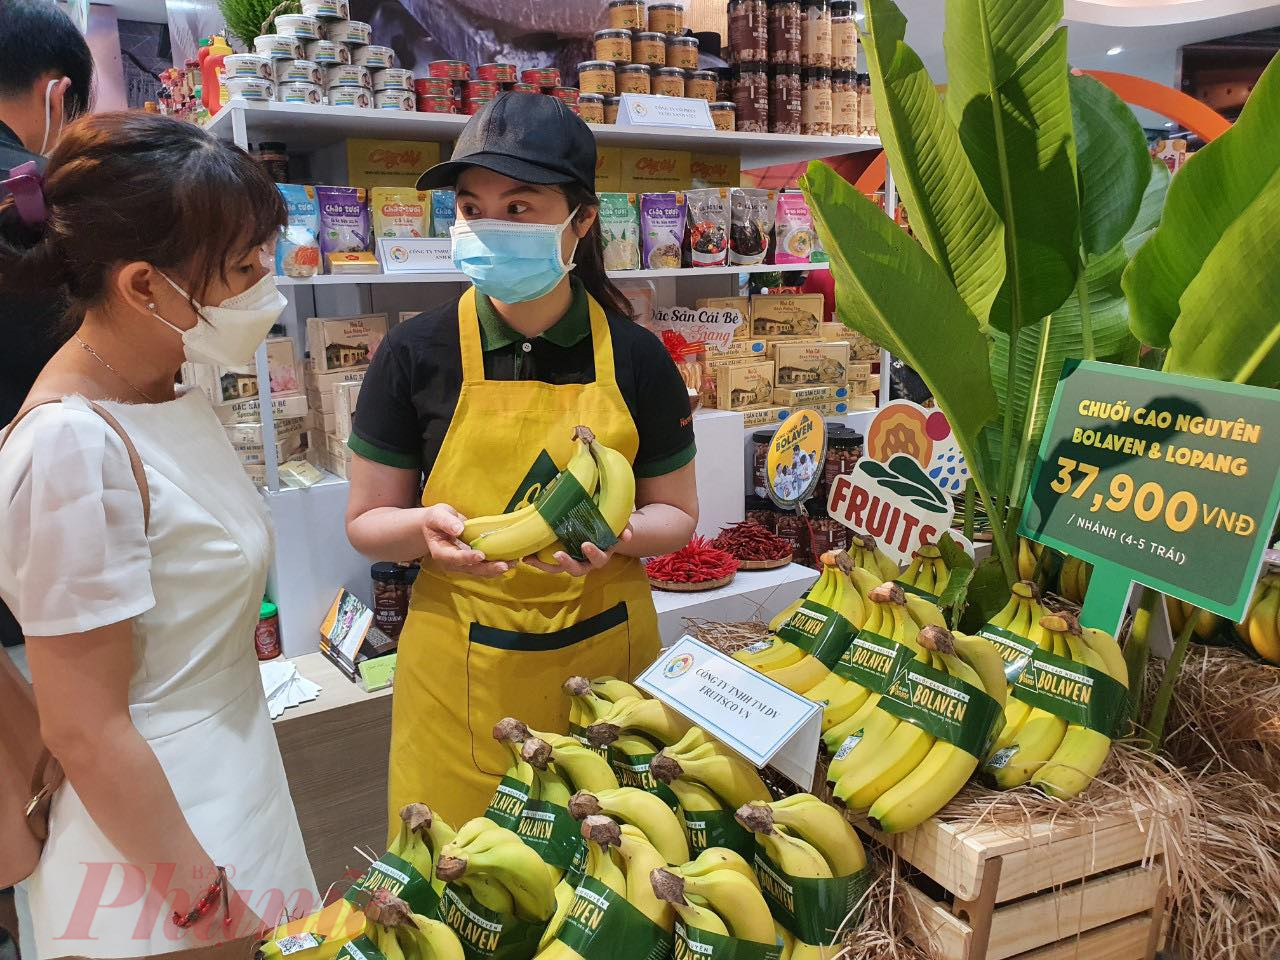 Chuối là một trong những mặt hàng Nhật Bản, Hàn Quốc nhập khẩu nhiều nhưng thị phần xuất khẩu chuối của Việt Nam sang thị trường này còn hạn chế - Ảnh: Nguyễn Cẩm